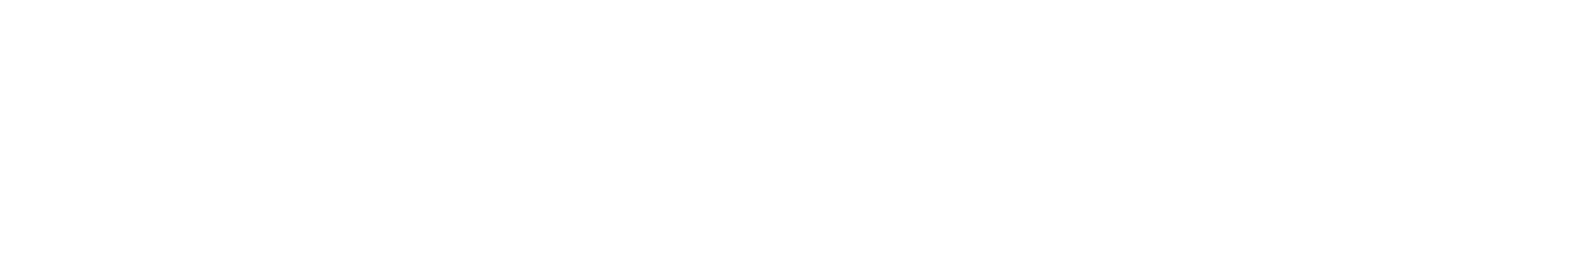 Hampiðjan logo grand pour les fonds sombres (PNG transparent)